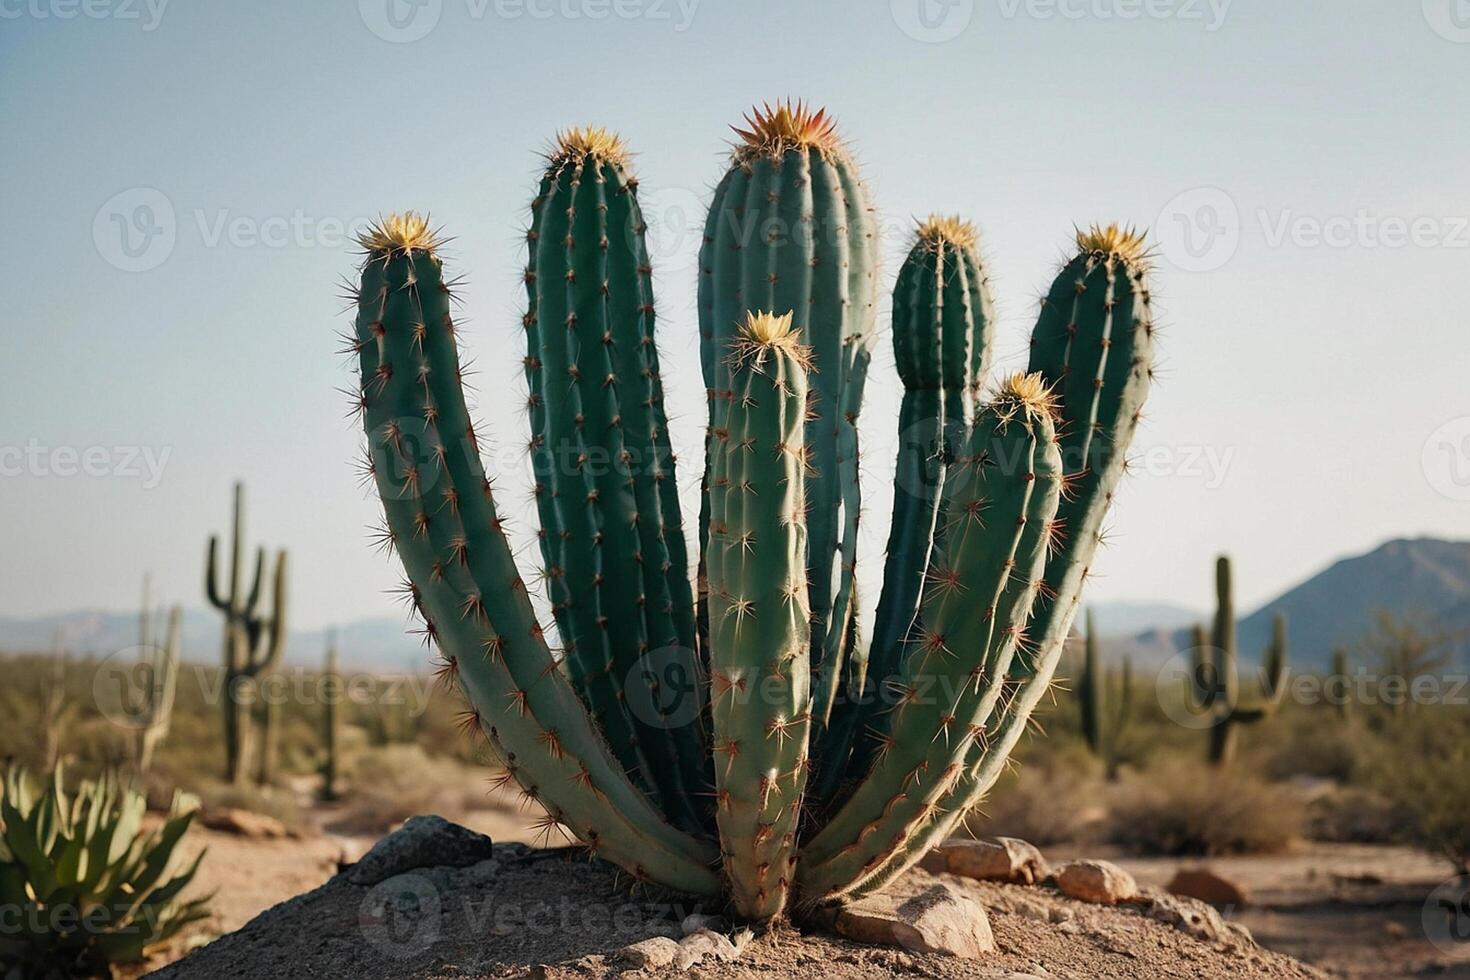 een cactus fabriek is getoond in een woestijn milieu foto